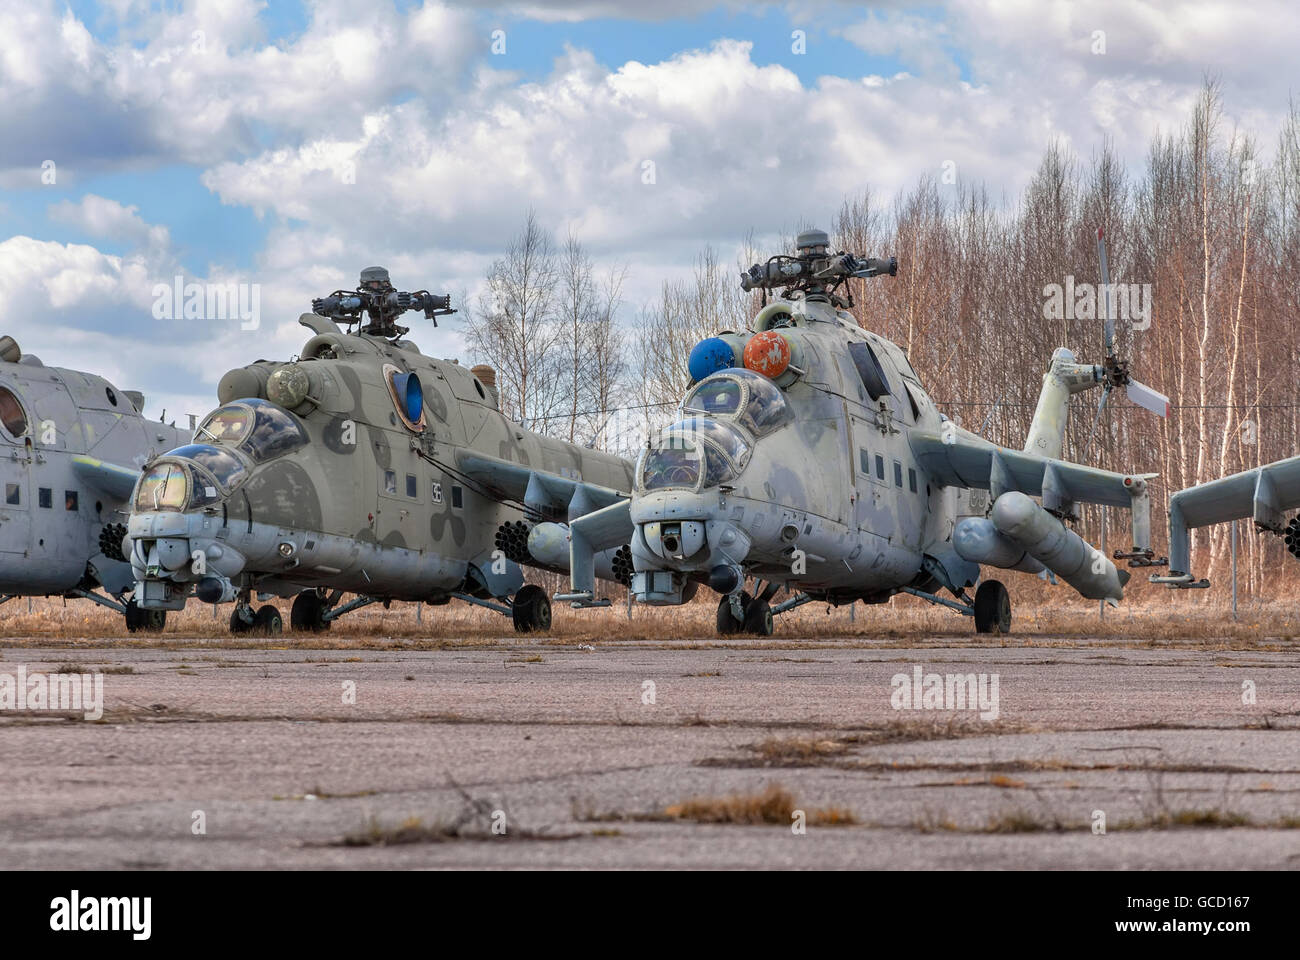 L'hélicoptère d'attaque Russe abandonnée Banque D'Images